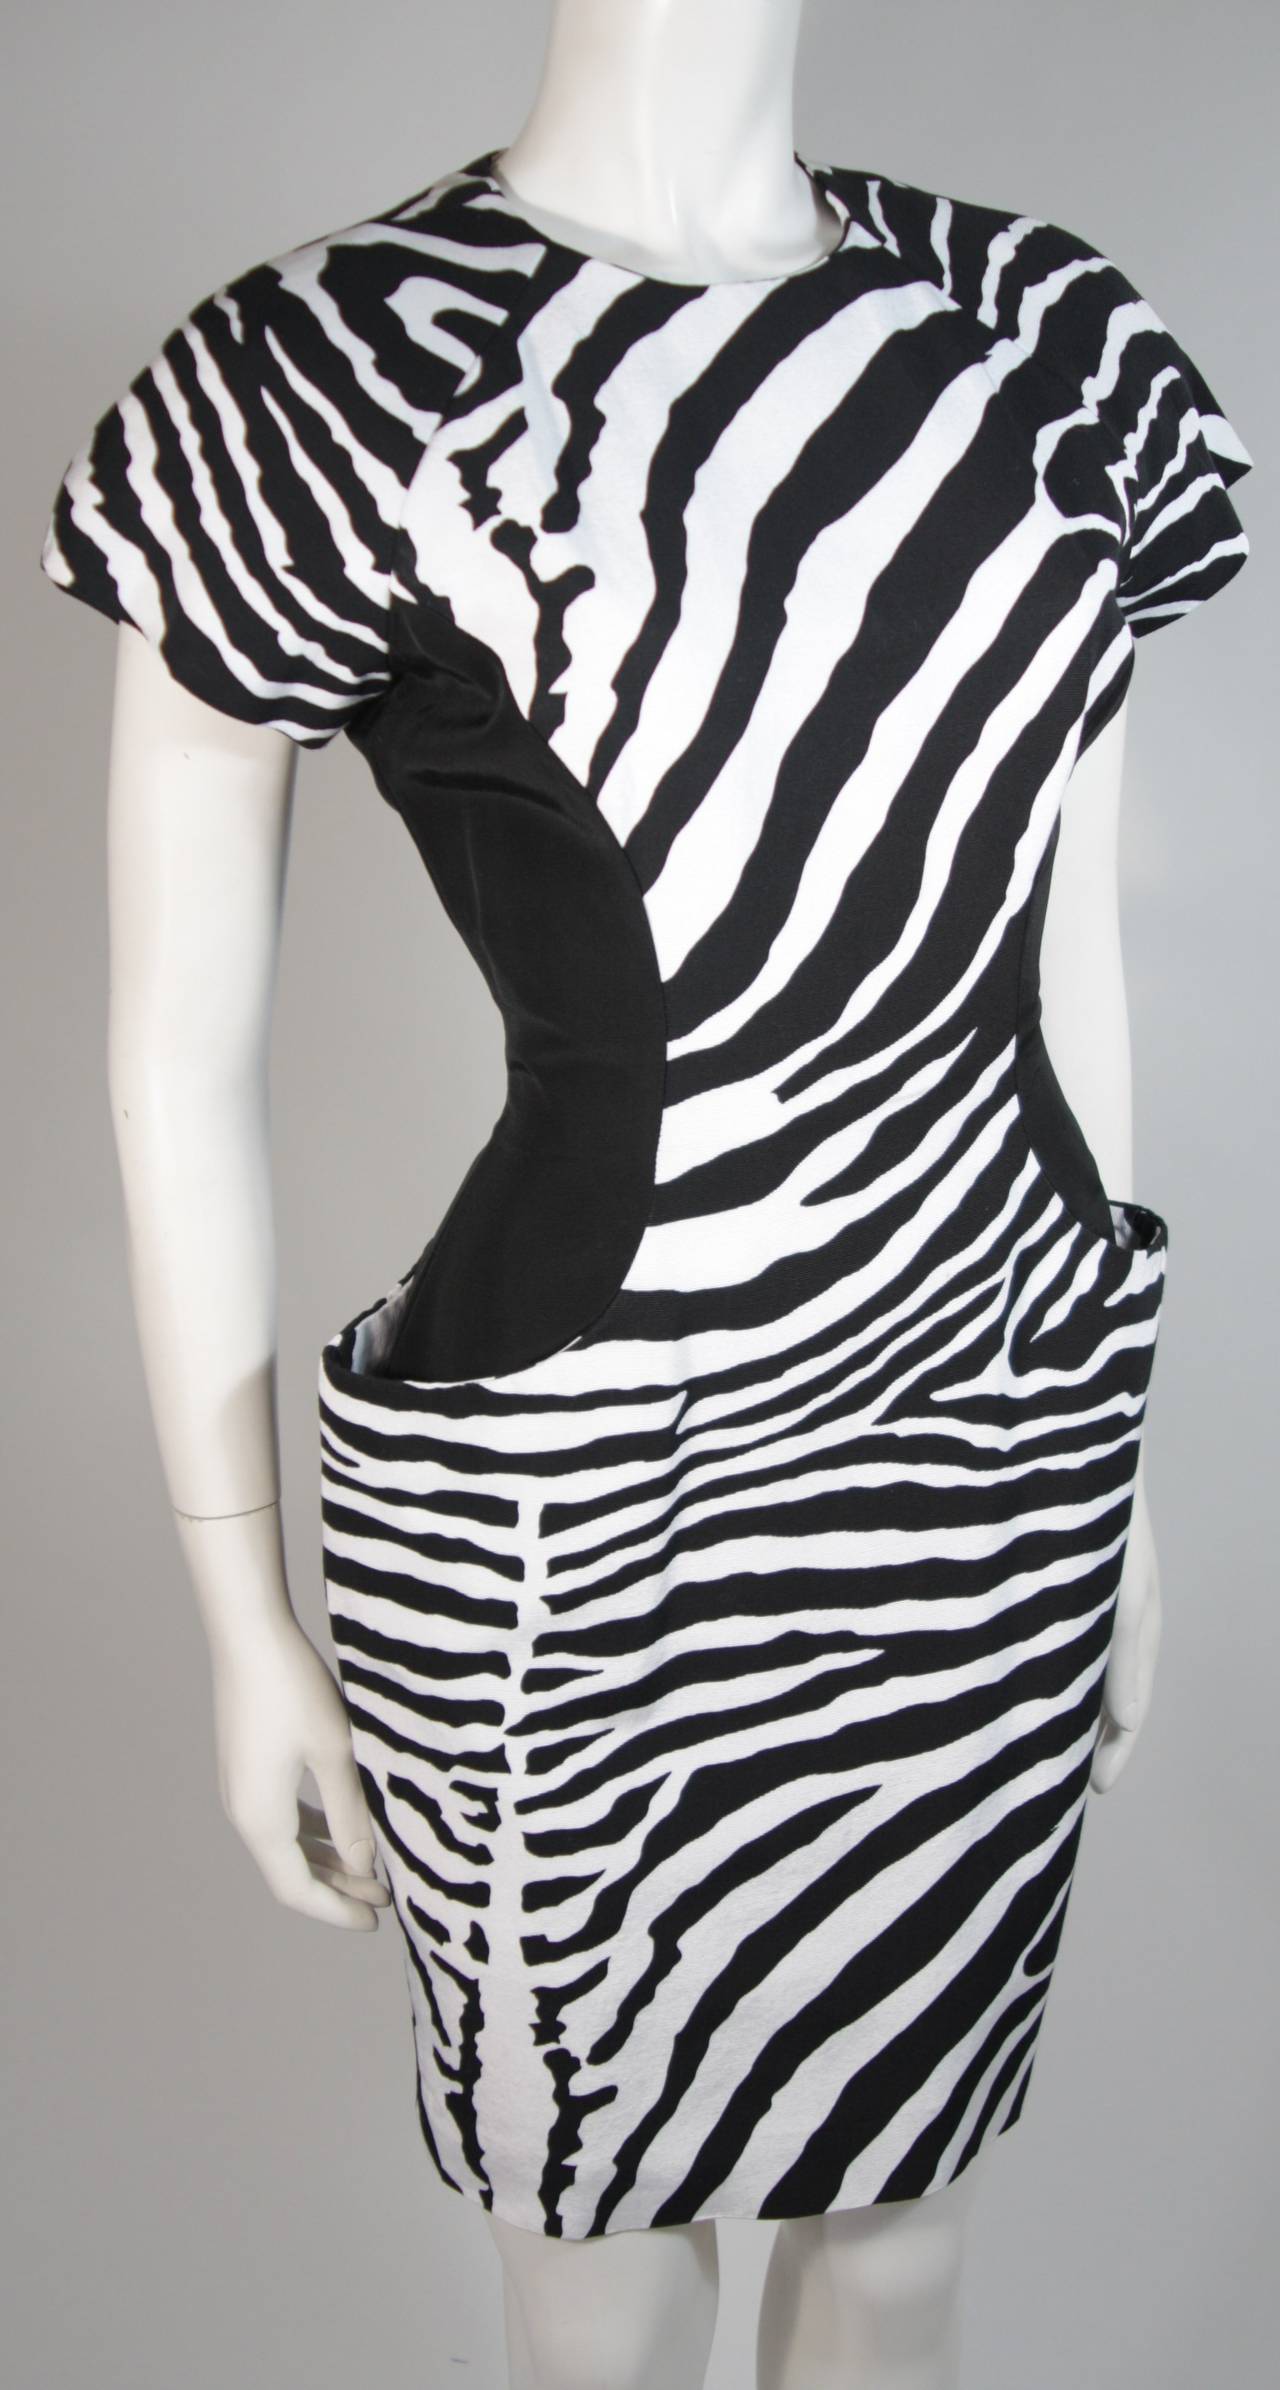 Vicky Tiel Black and White Zebra Patterned Cocktail Dress Size Small 1